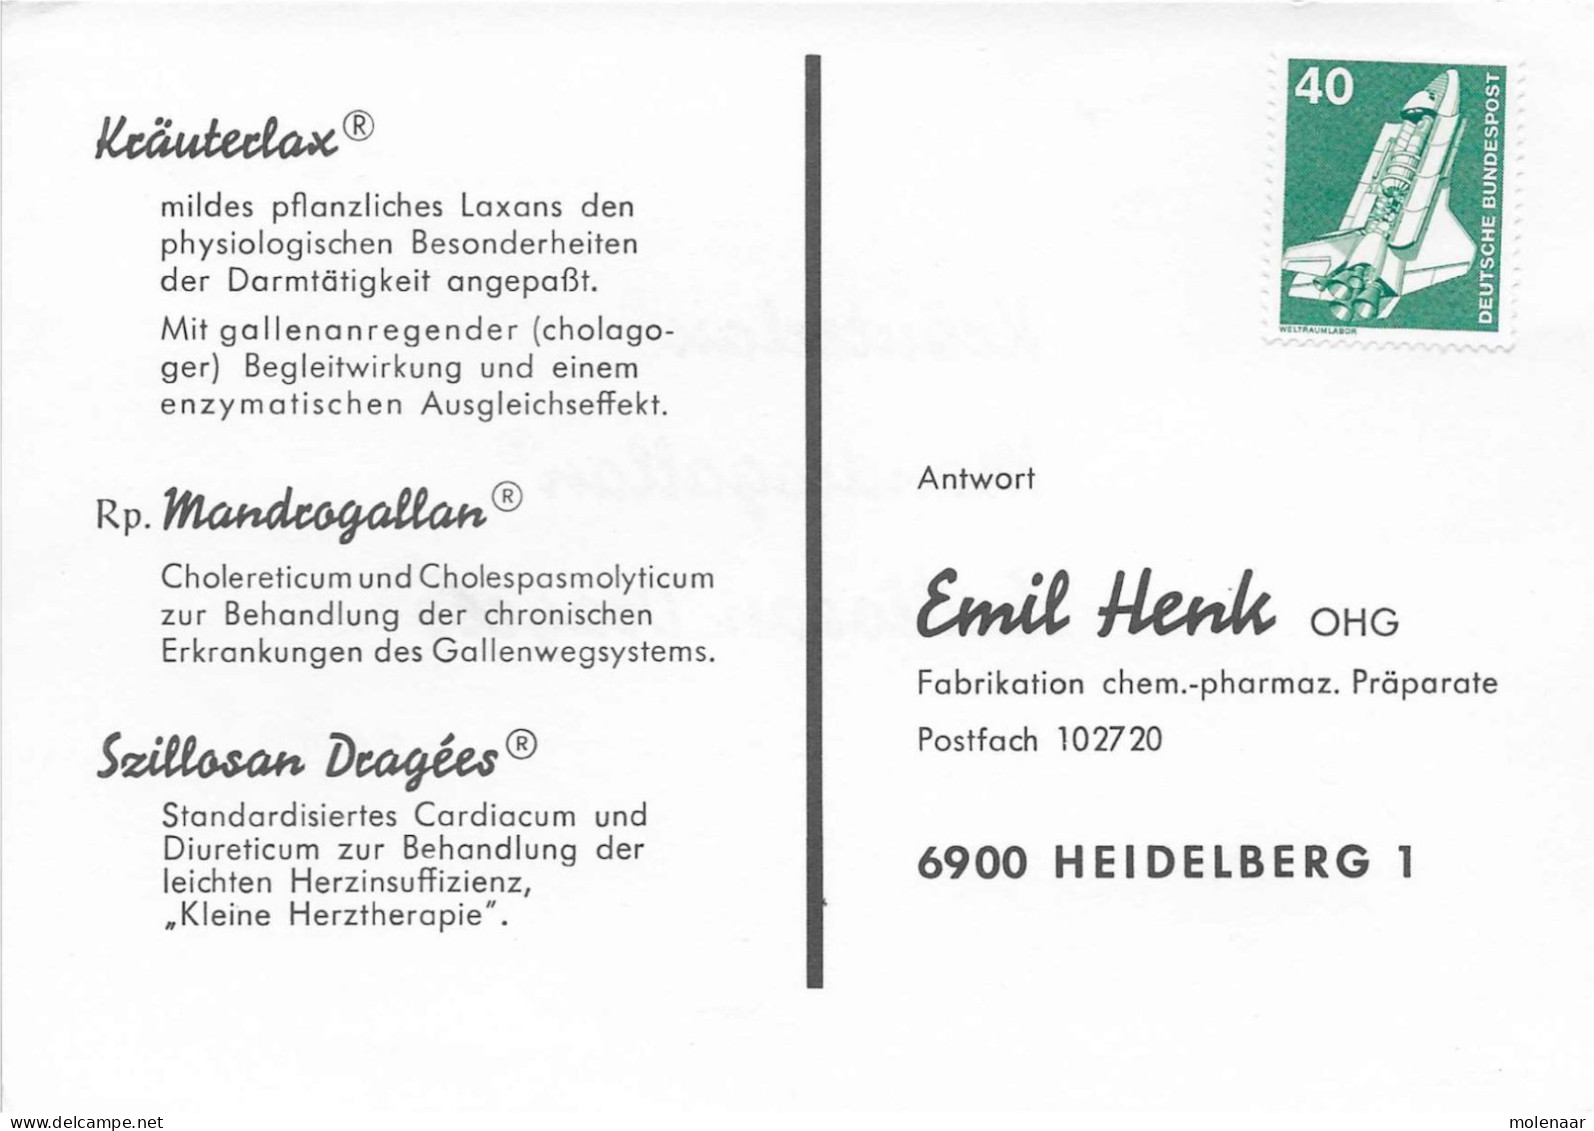 Postzegels > Europa > Duitsland > West-Duitsland > 1970-1979 > Kaart Met No. 850 (17309) - Brieven En Documenten